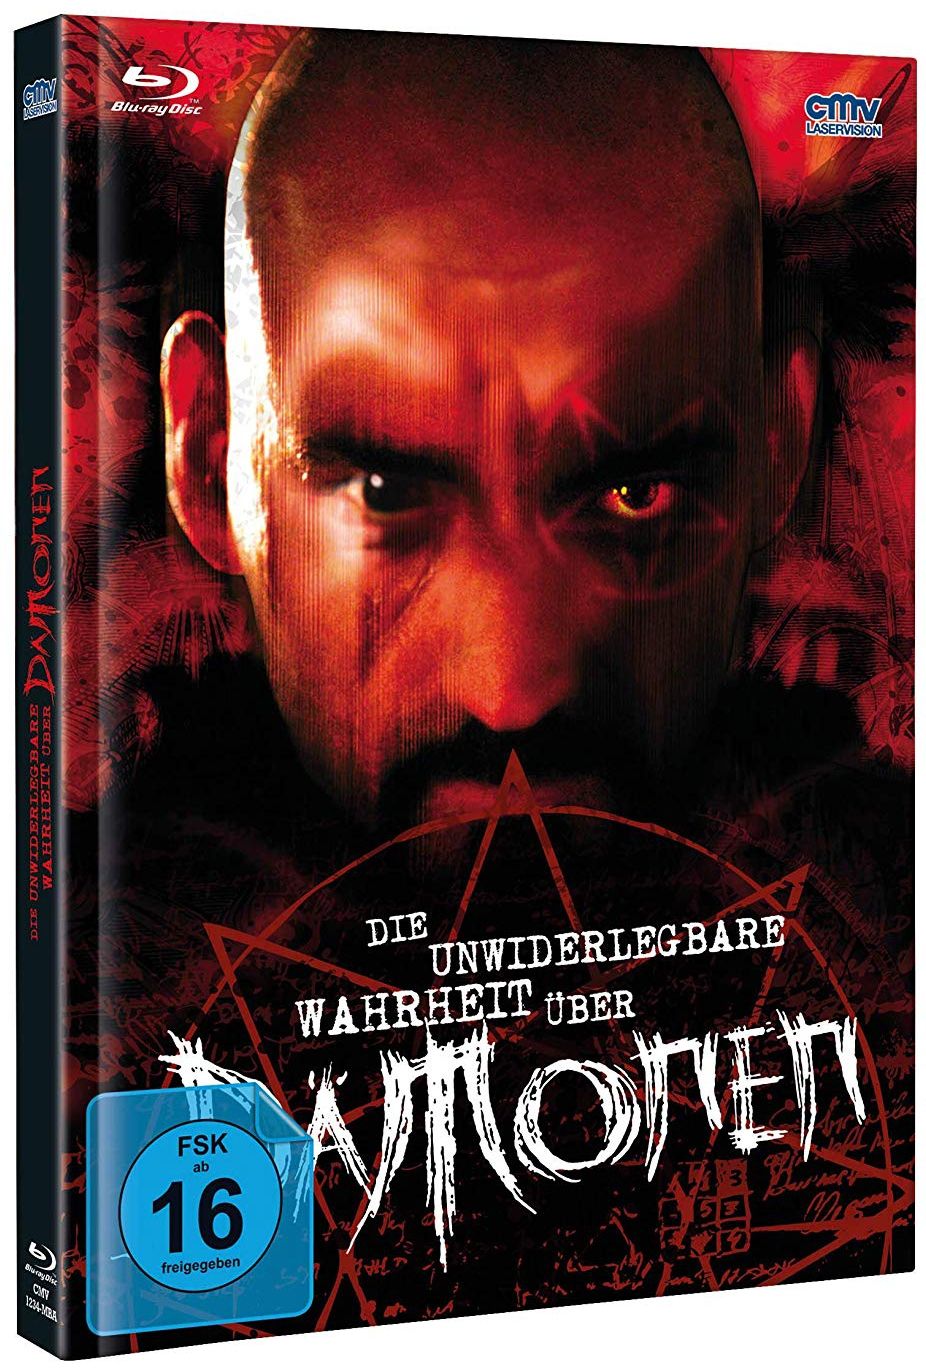 Unwiderlegbare Wahrheit über Dämonen, Die (Lim. Uncut Mediabook - Cover A) (DVD + BLURAY)